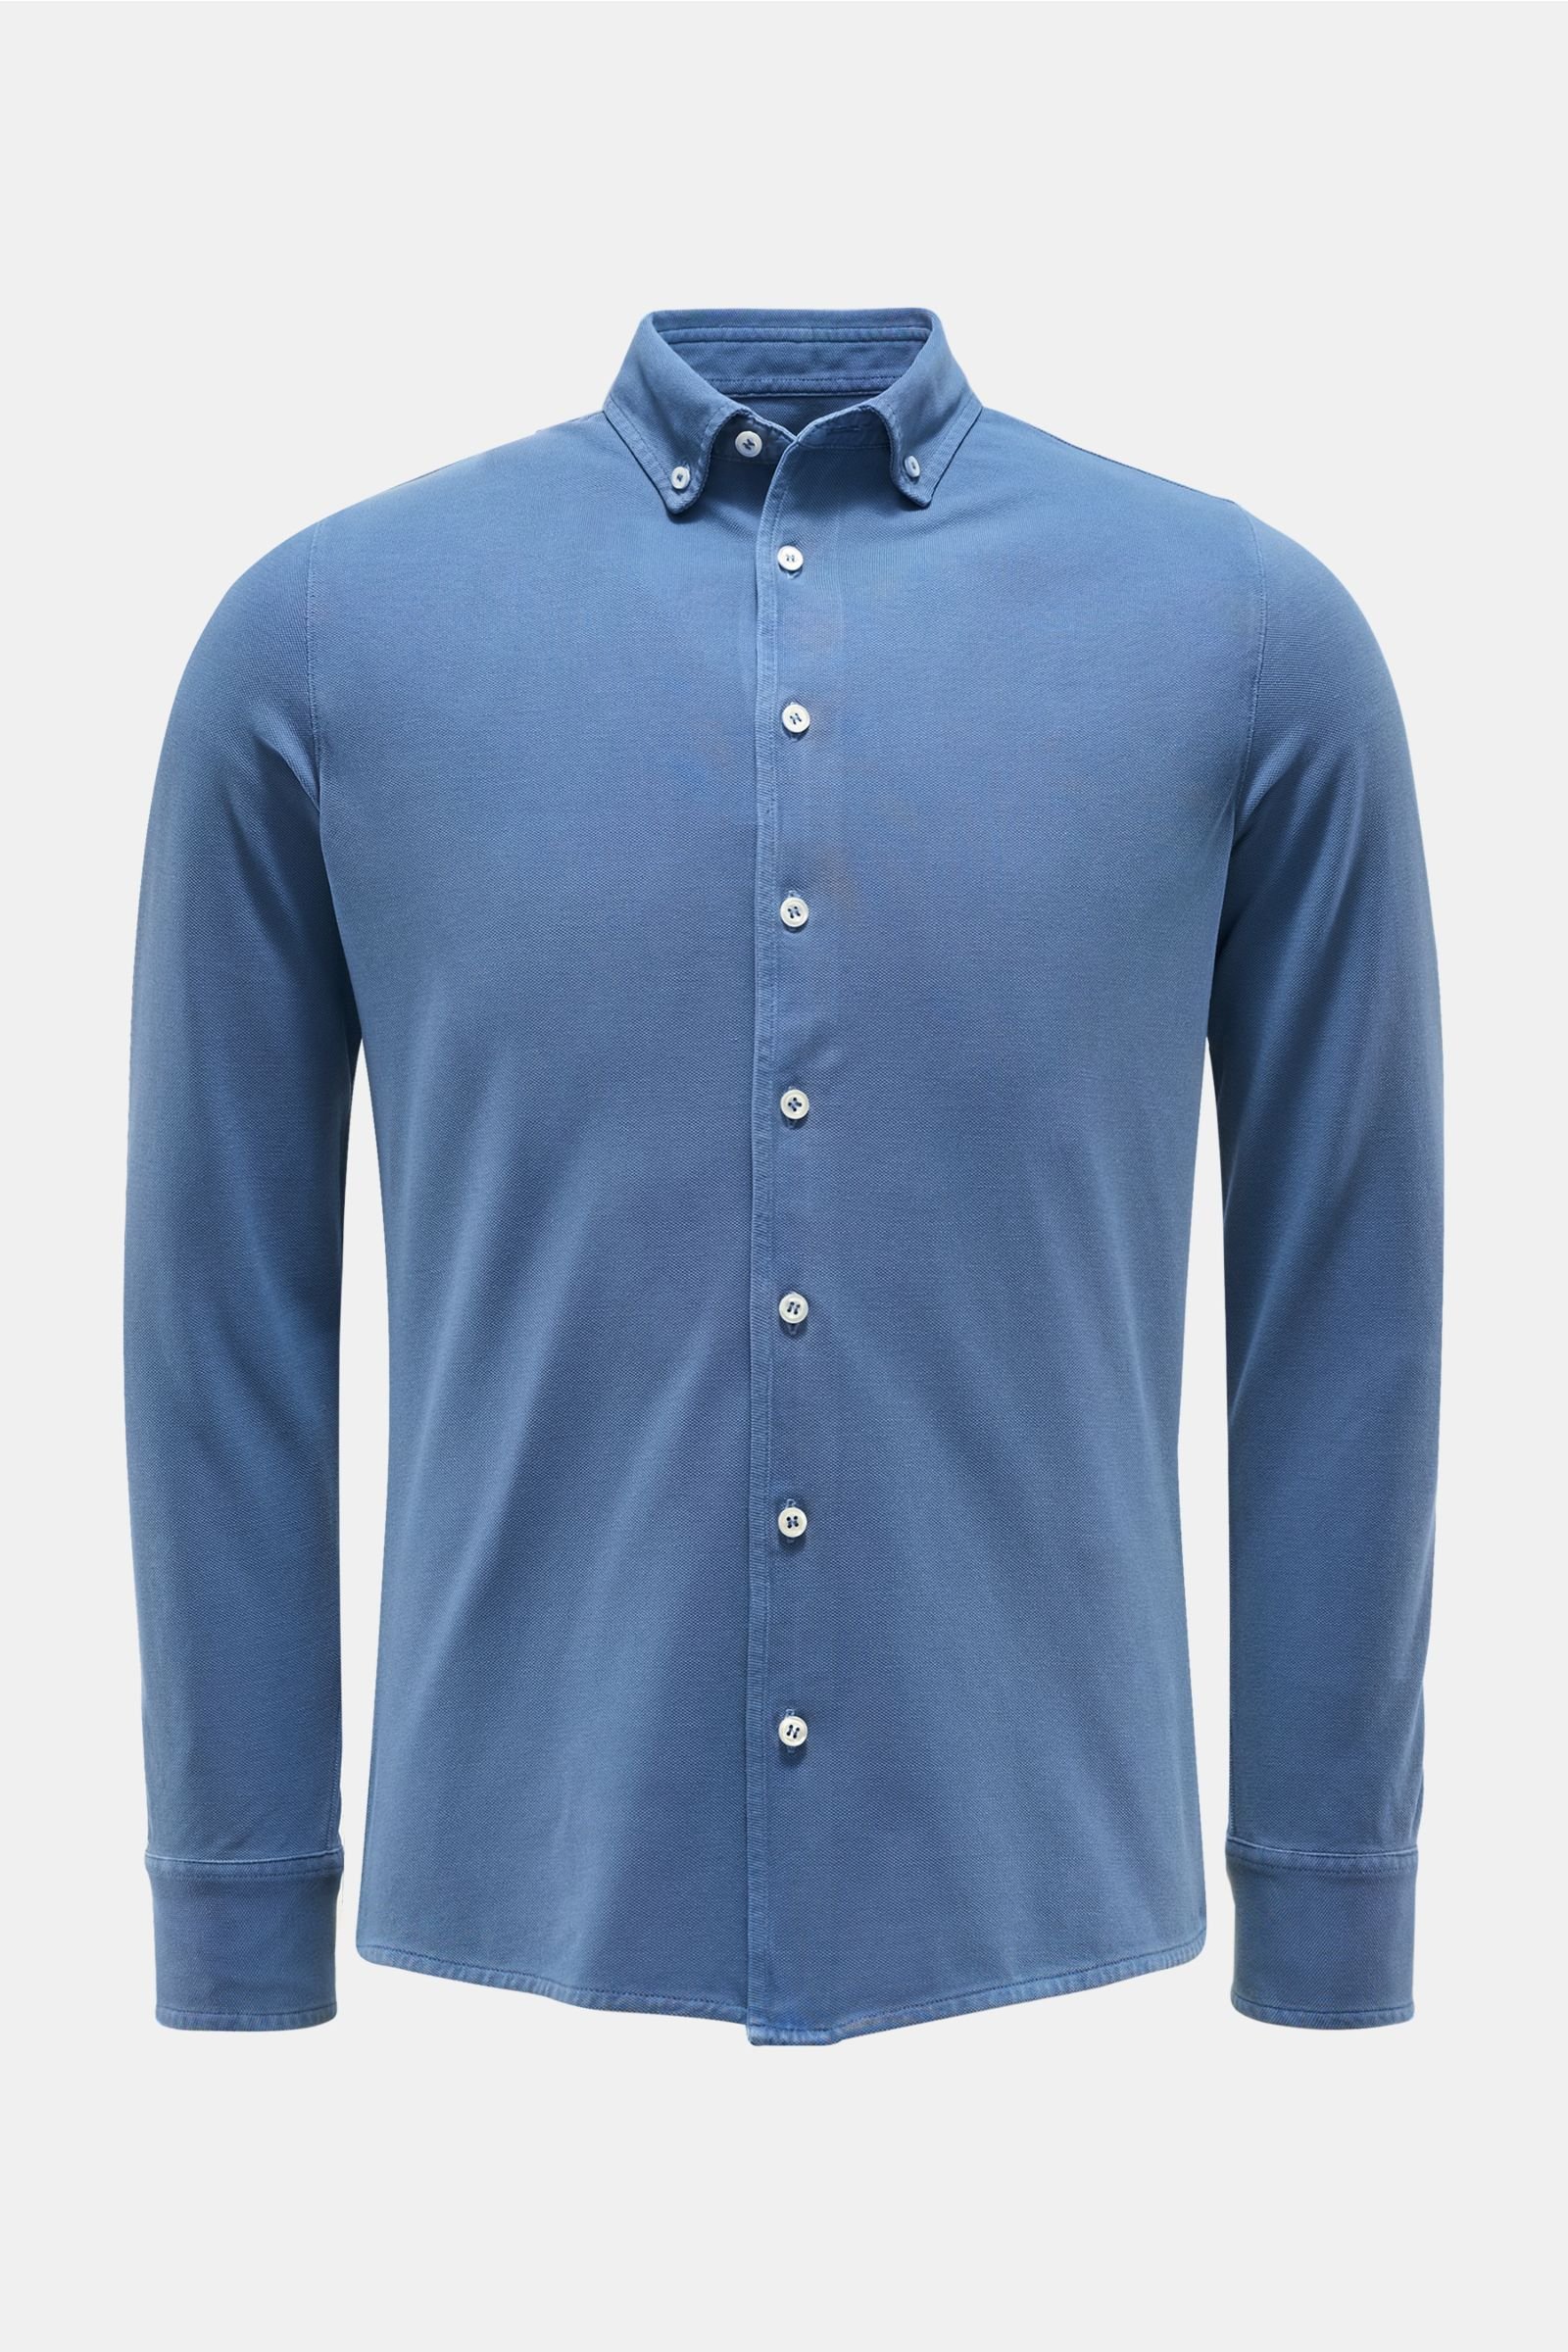 Piqué shirt button-down collar grey-blue